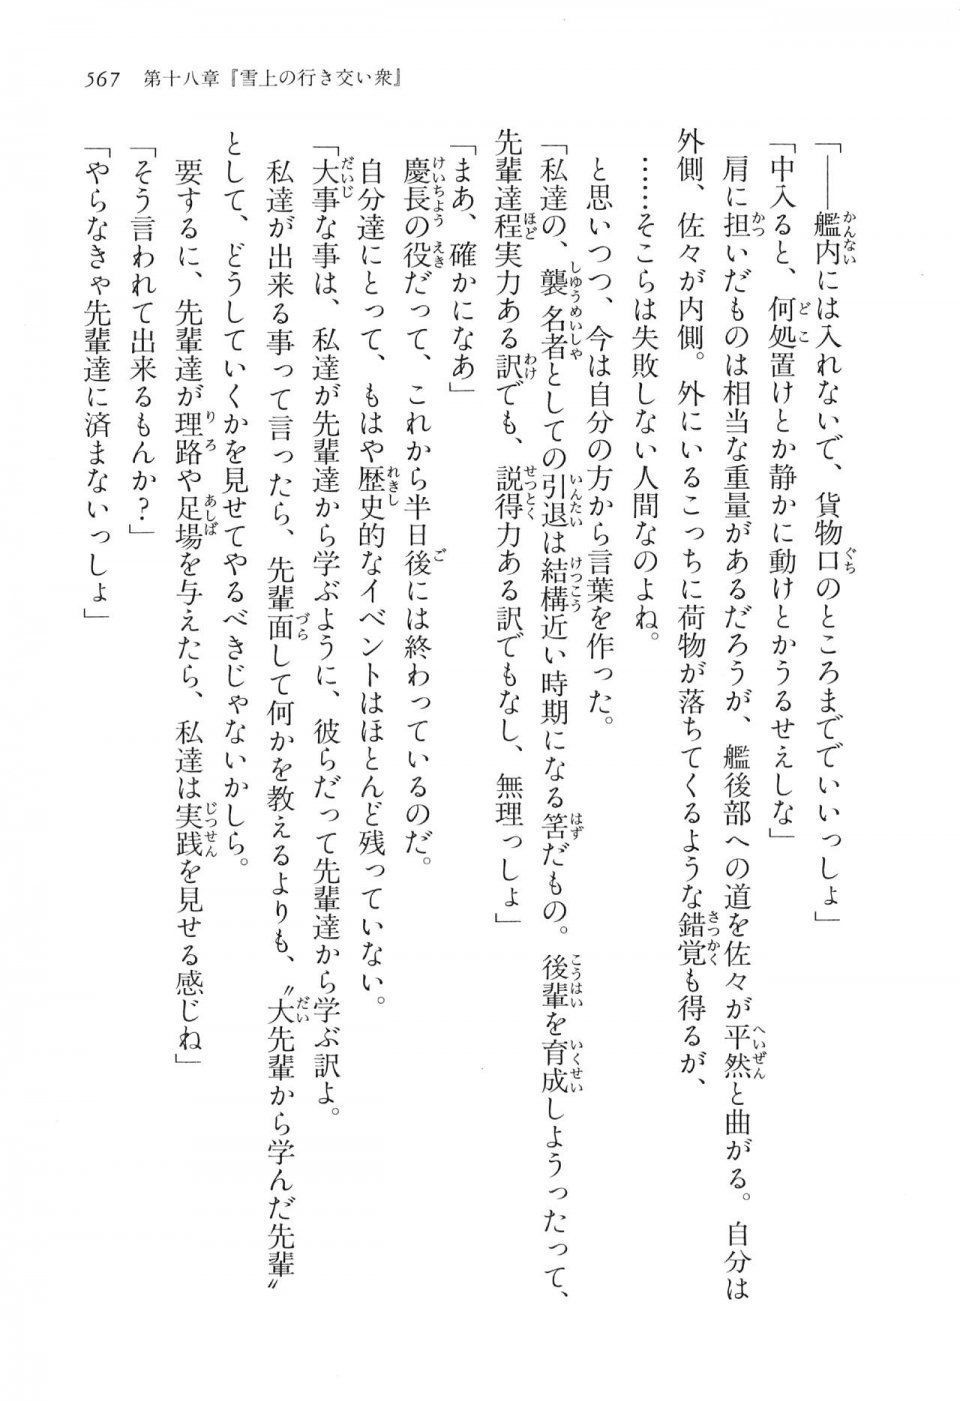 Kyoukai Senjou no Horizon LN Vol 16(7A) - Photo #567